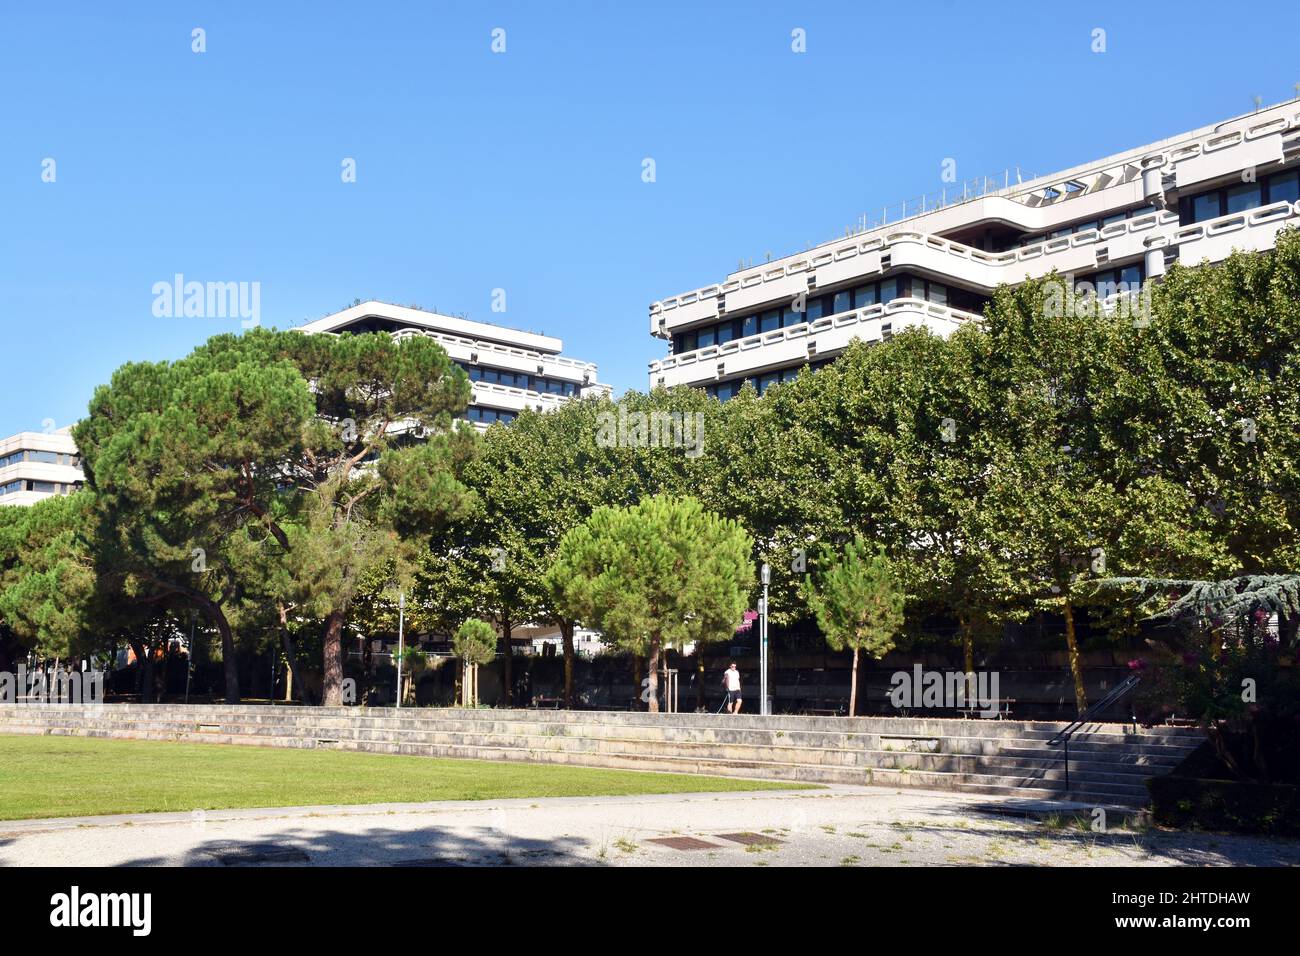 El Jardins de Gambetta, el más grande de seis bloques similares de 7 pisos, erigida en una cubierta entre R; Claude Bonnier y la Esplanade Charles de Gaulle, Mériadeck Foto de stock